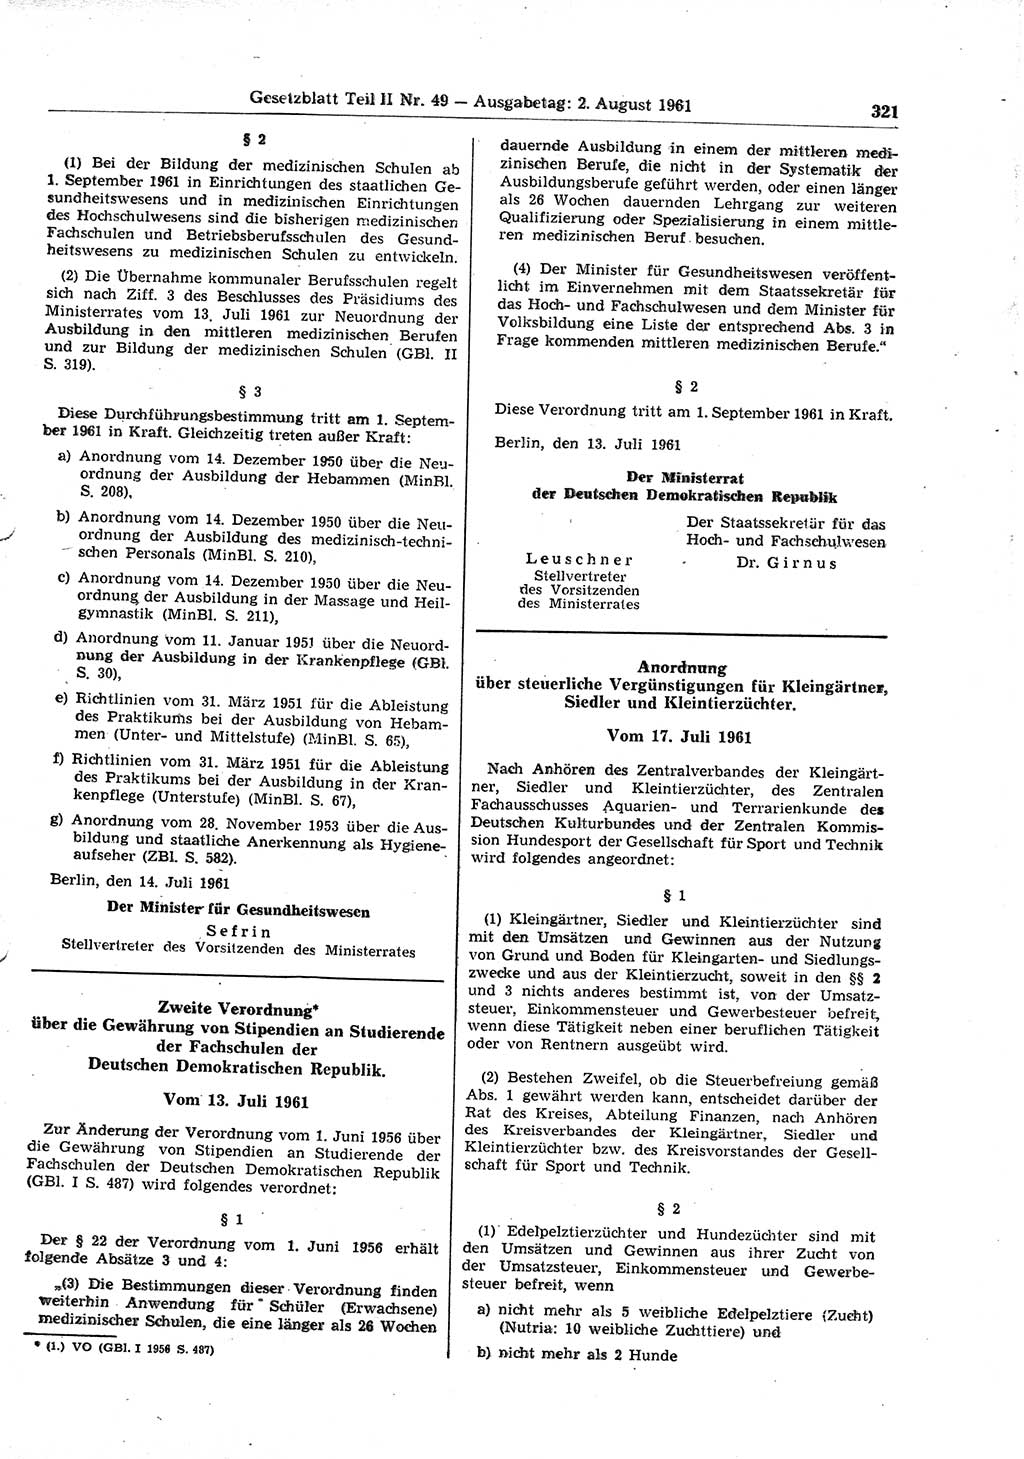 Gesetzblatt (GBl.) der Deutschen Demokratischen Republik (DDR) Teil ⅠⅠ 1961, Seite 321 (GBl. DDR ⅠⅠ 1961, S. 321)